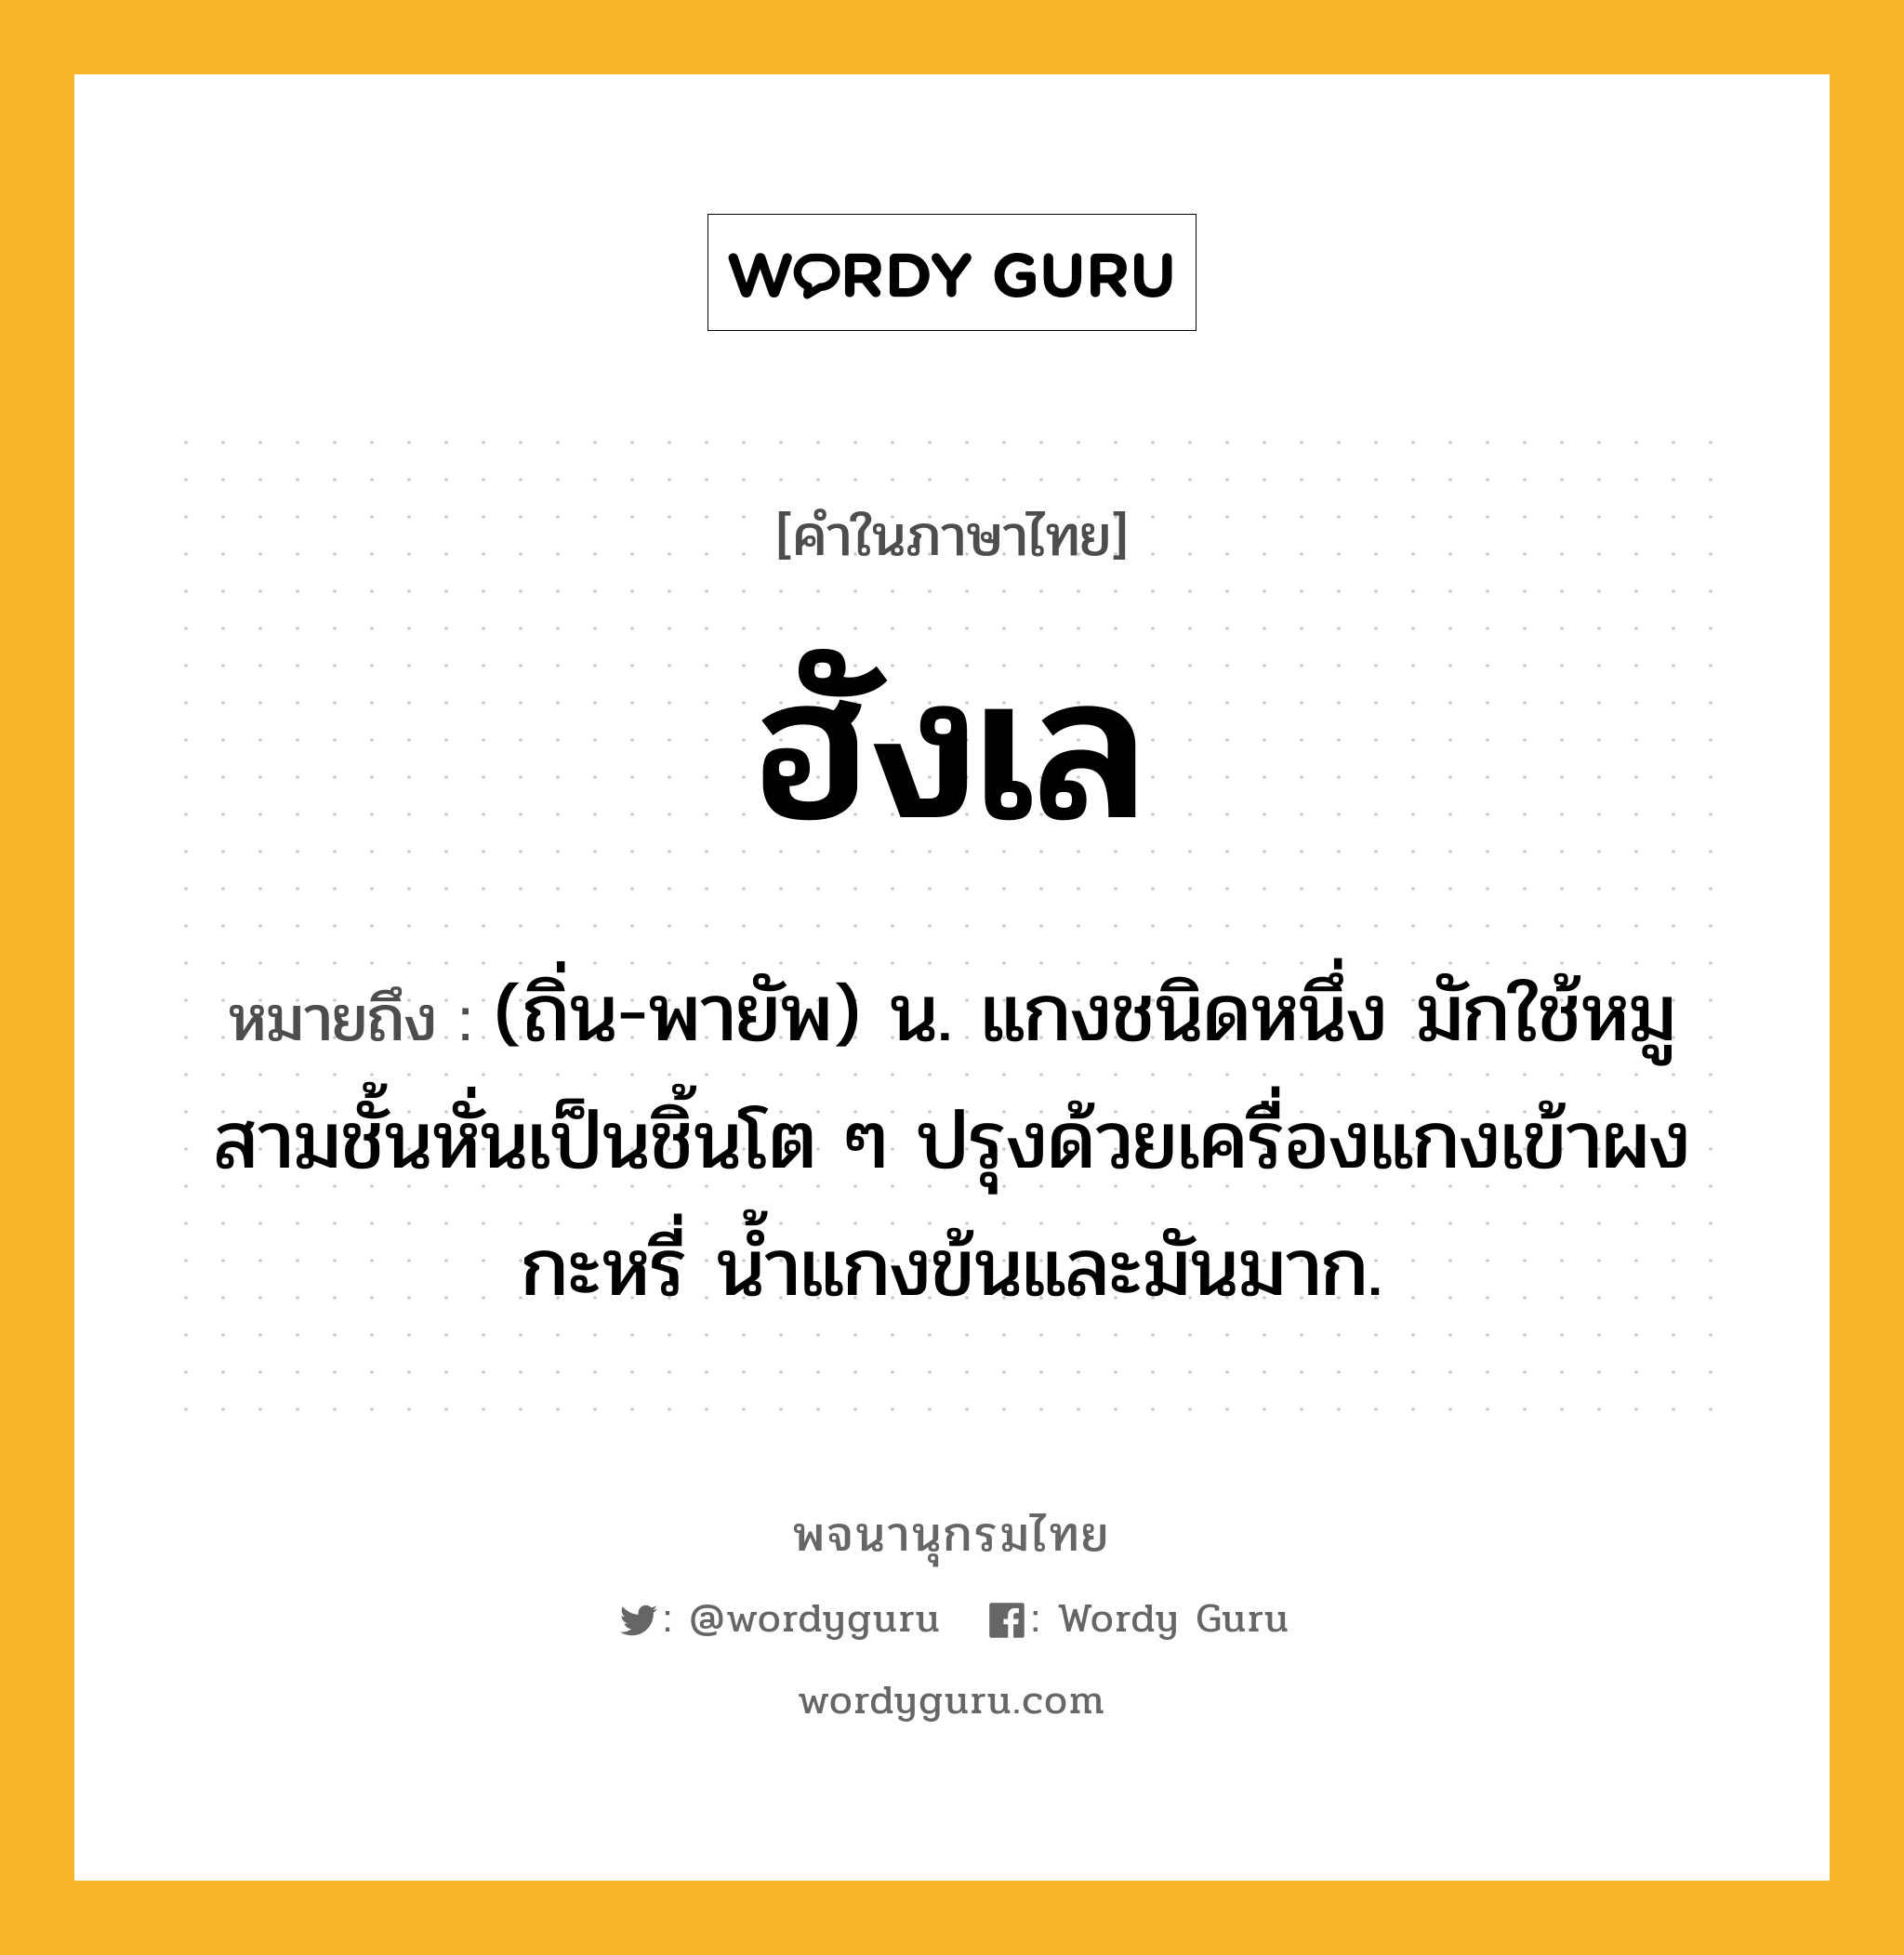 ฮังเล หมายถึงอะไร?, คำในภาษาไทย ฮังเล หมายถึง (ถิ่น-พายัพ) น. แกงชนิดหนึ่ง มักใช้หมูสามชั้นหั่นเป็นชิ้นโต ๆ ปรุงด้วยเครื่องแกงเข้าผงกะหรี่ นํ้าแกงข้นและมันมาก.